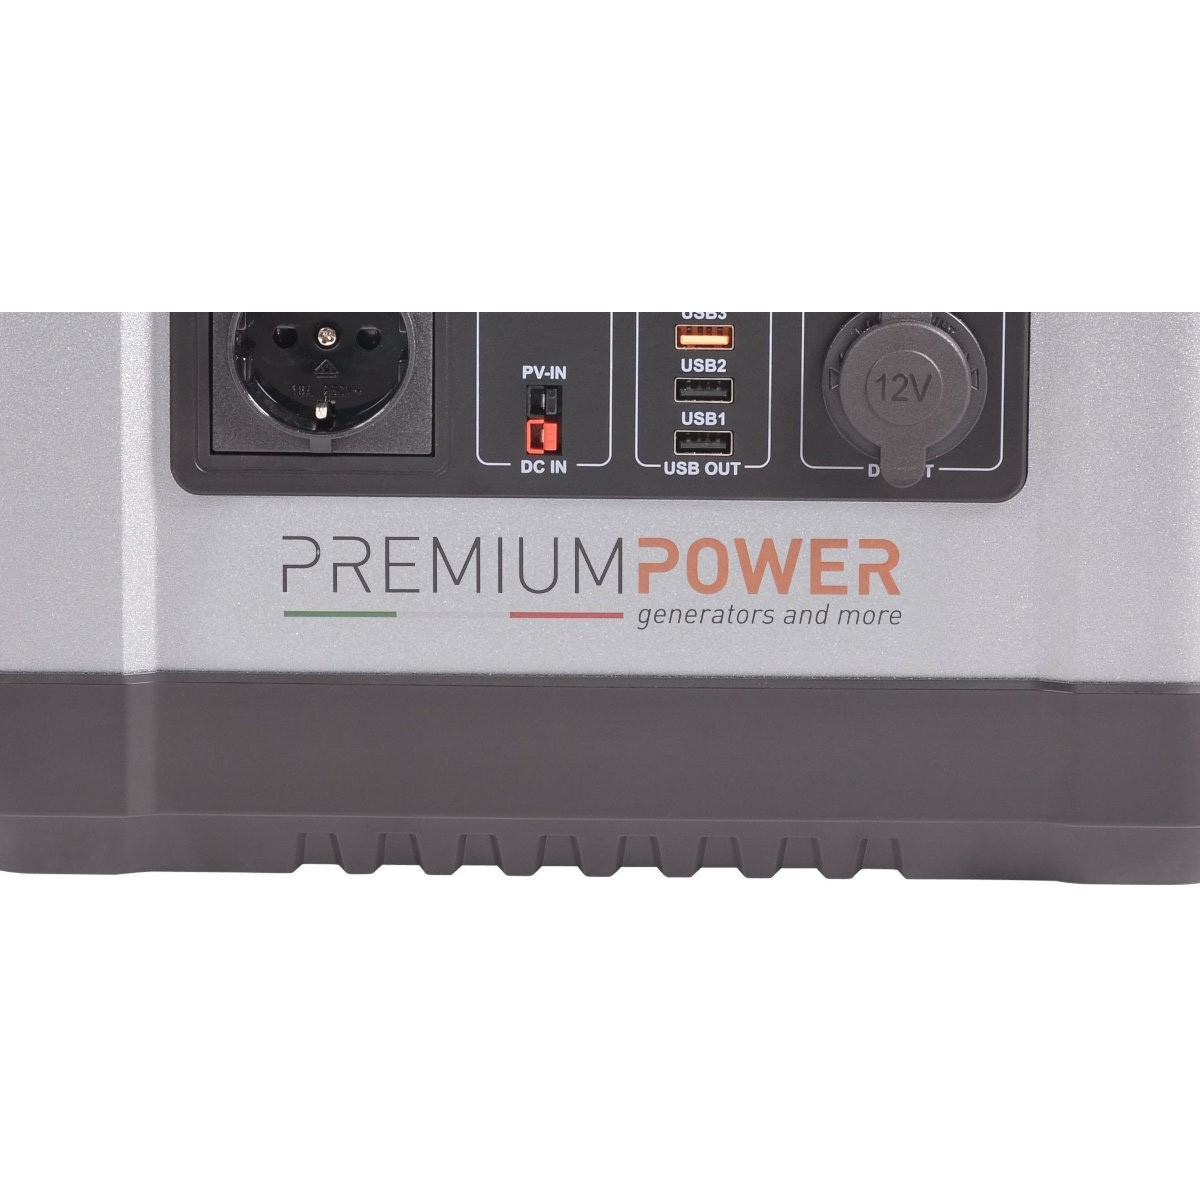 Pb power. Premium Power 1000 набор массы.